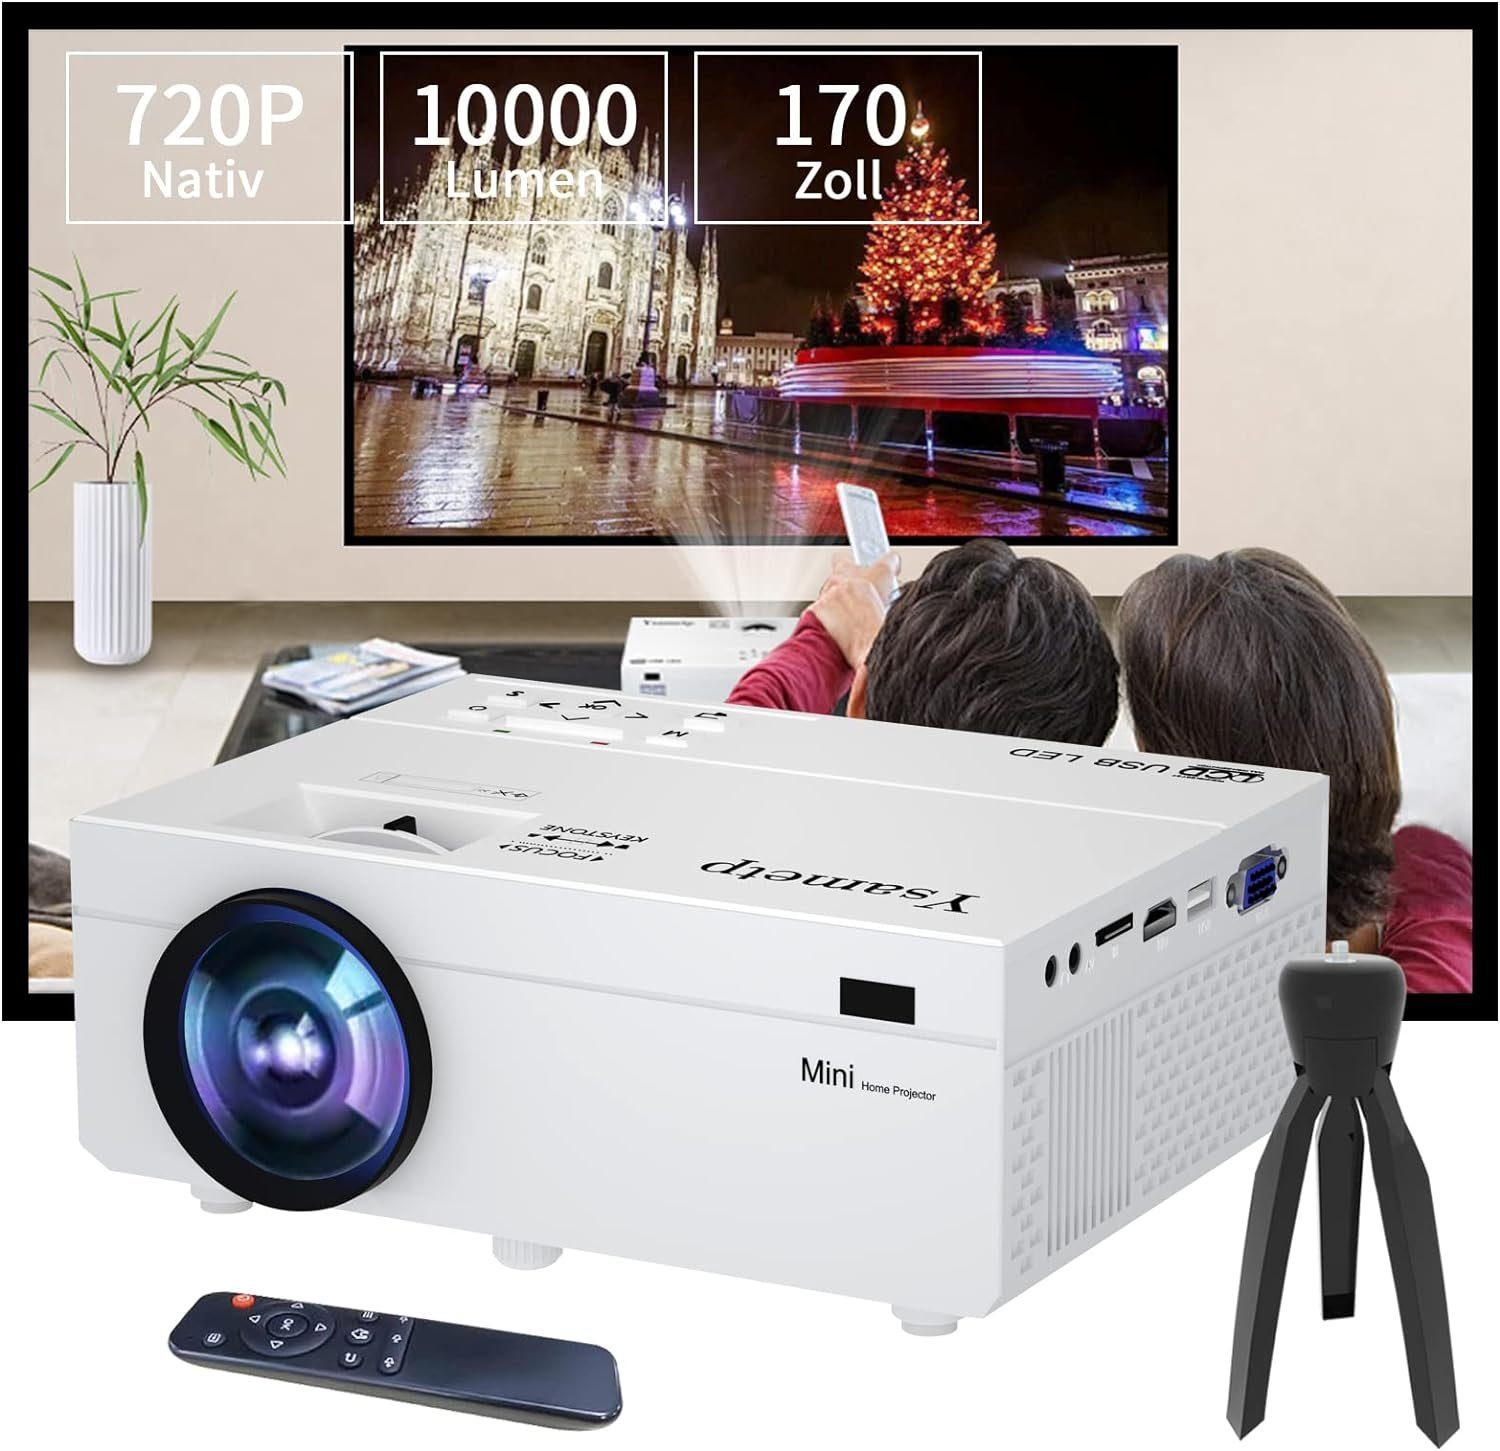 Ysametp Portabler Projektor (1000:1, 1280 x 720 px, Tragbarer HD 720P, 200'' Heimkino, kompatibel mit Laptop, TV-Stick)